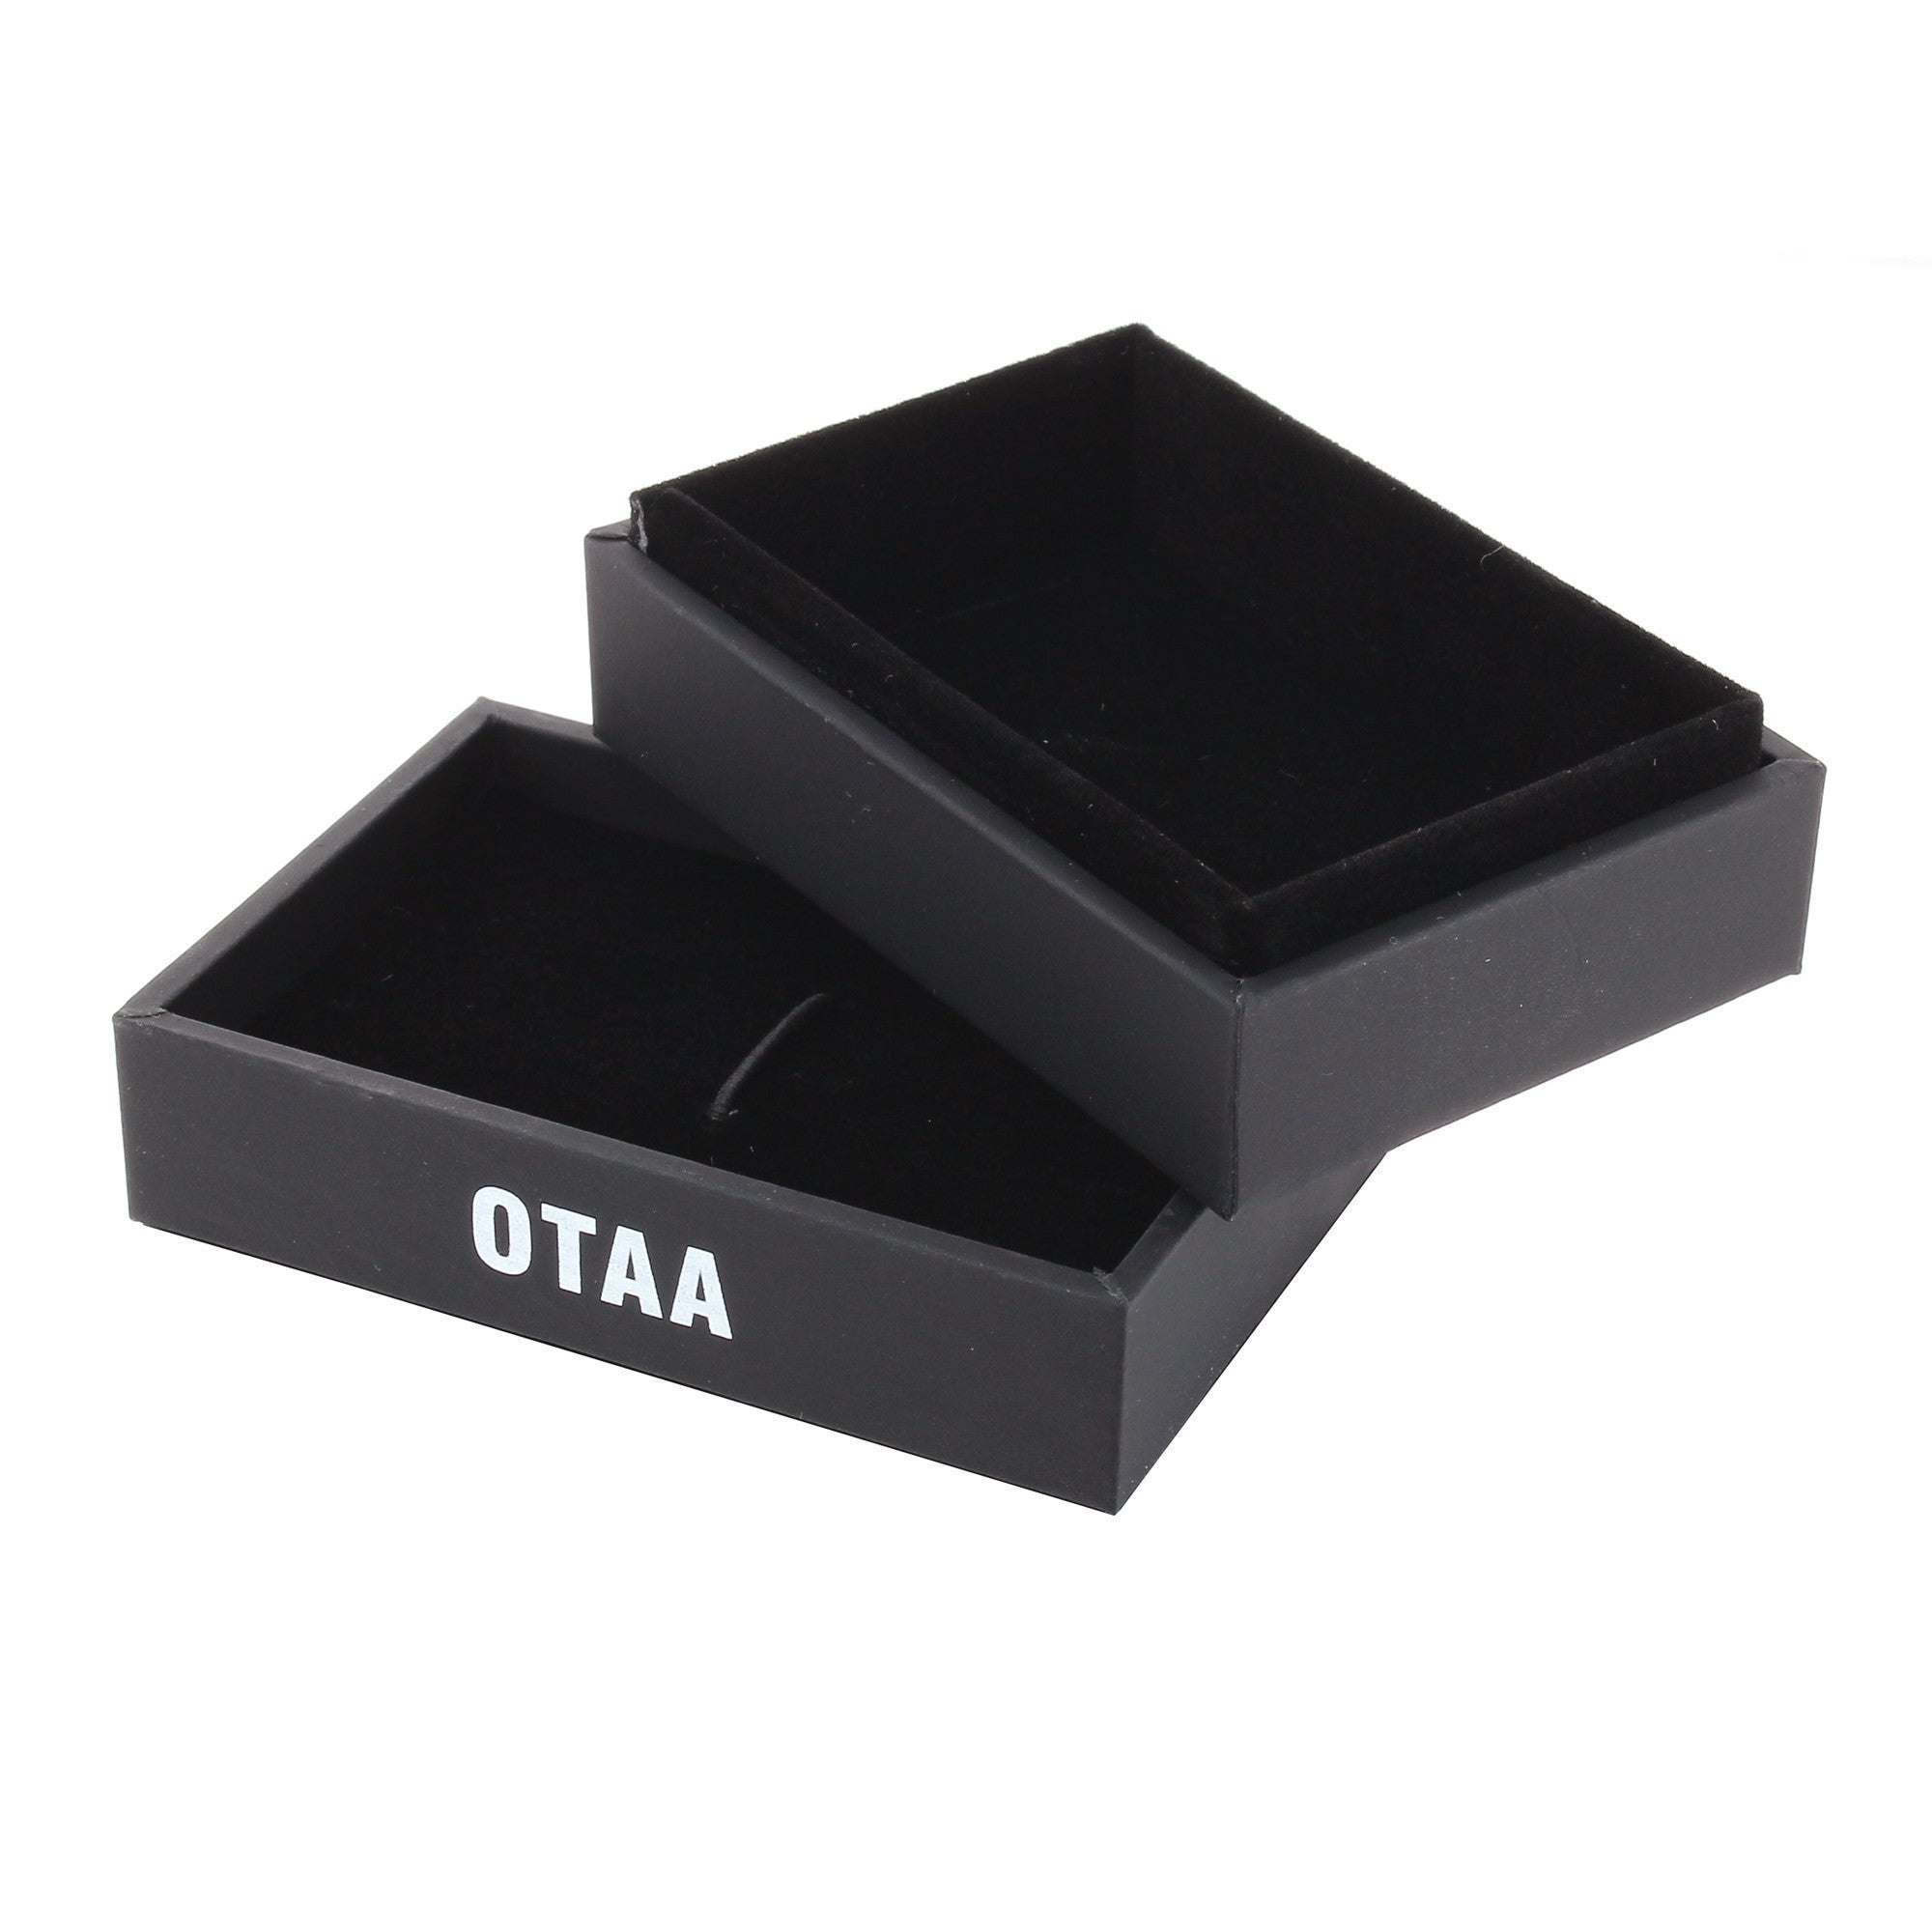 OTAA Cufflinks Box Open